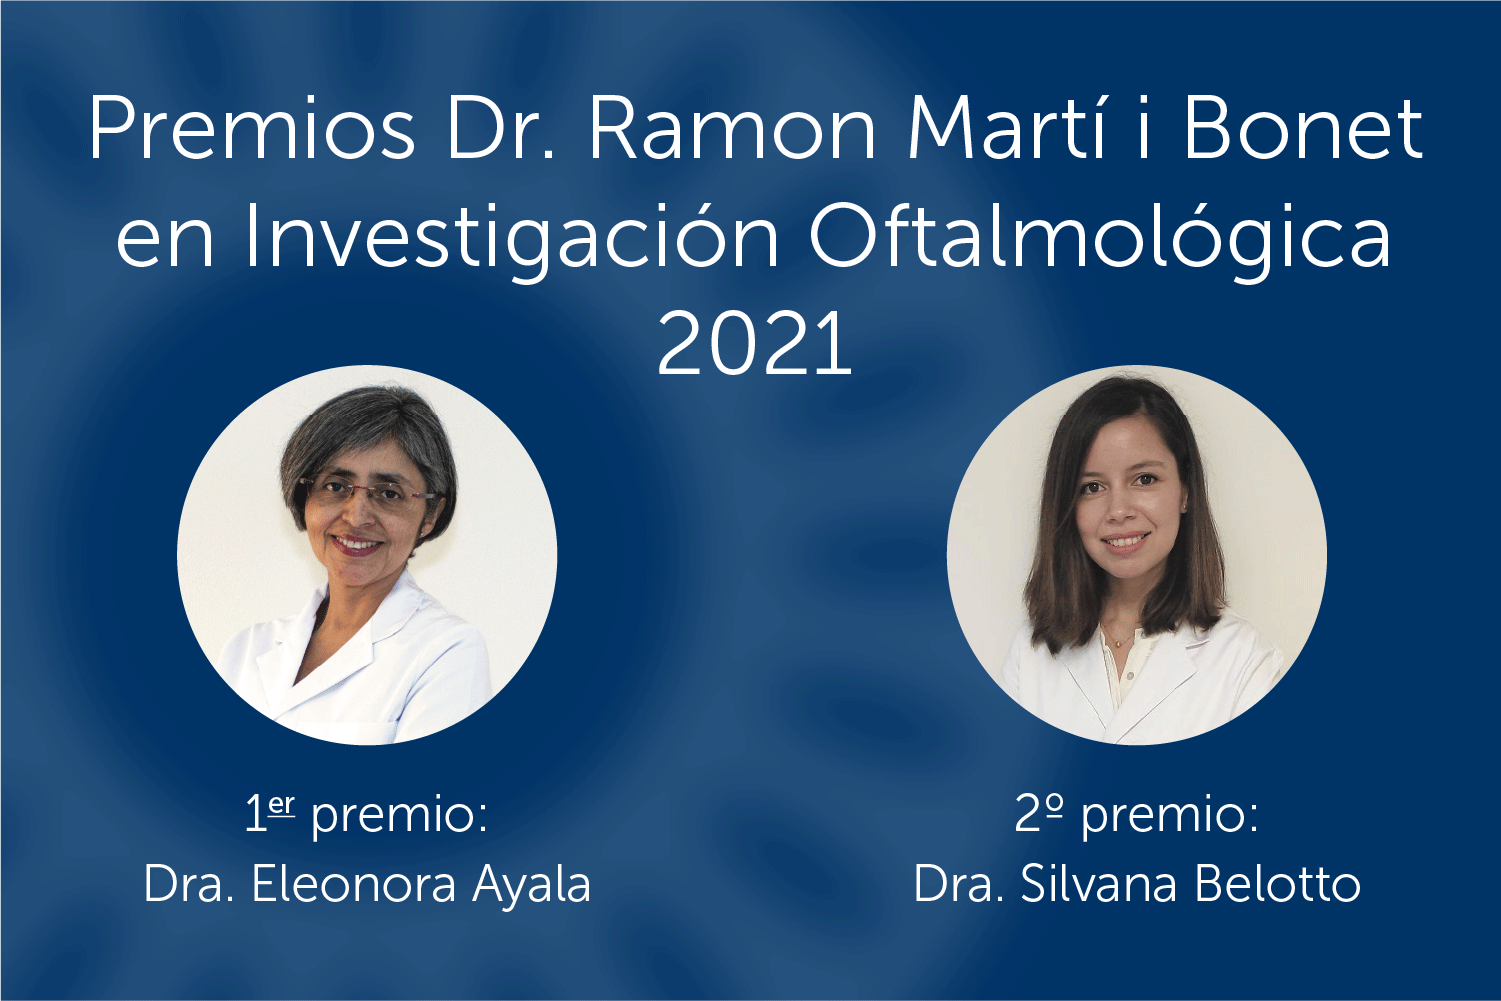 ICR da a conocer los proyectos ganadores de los Premios Dr. Ramon Martí i Bonet 2021